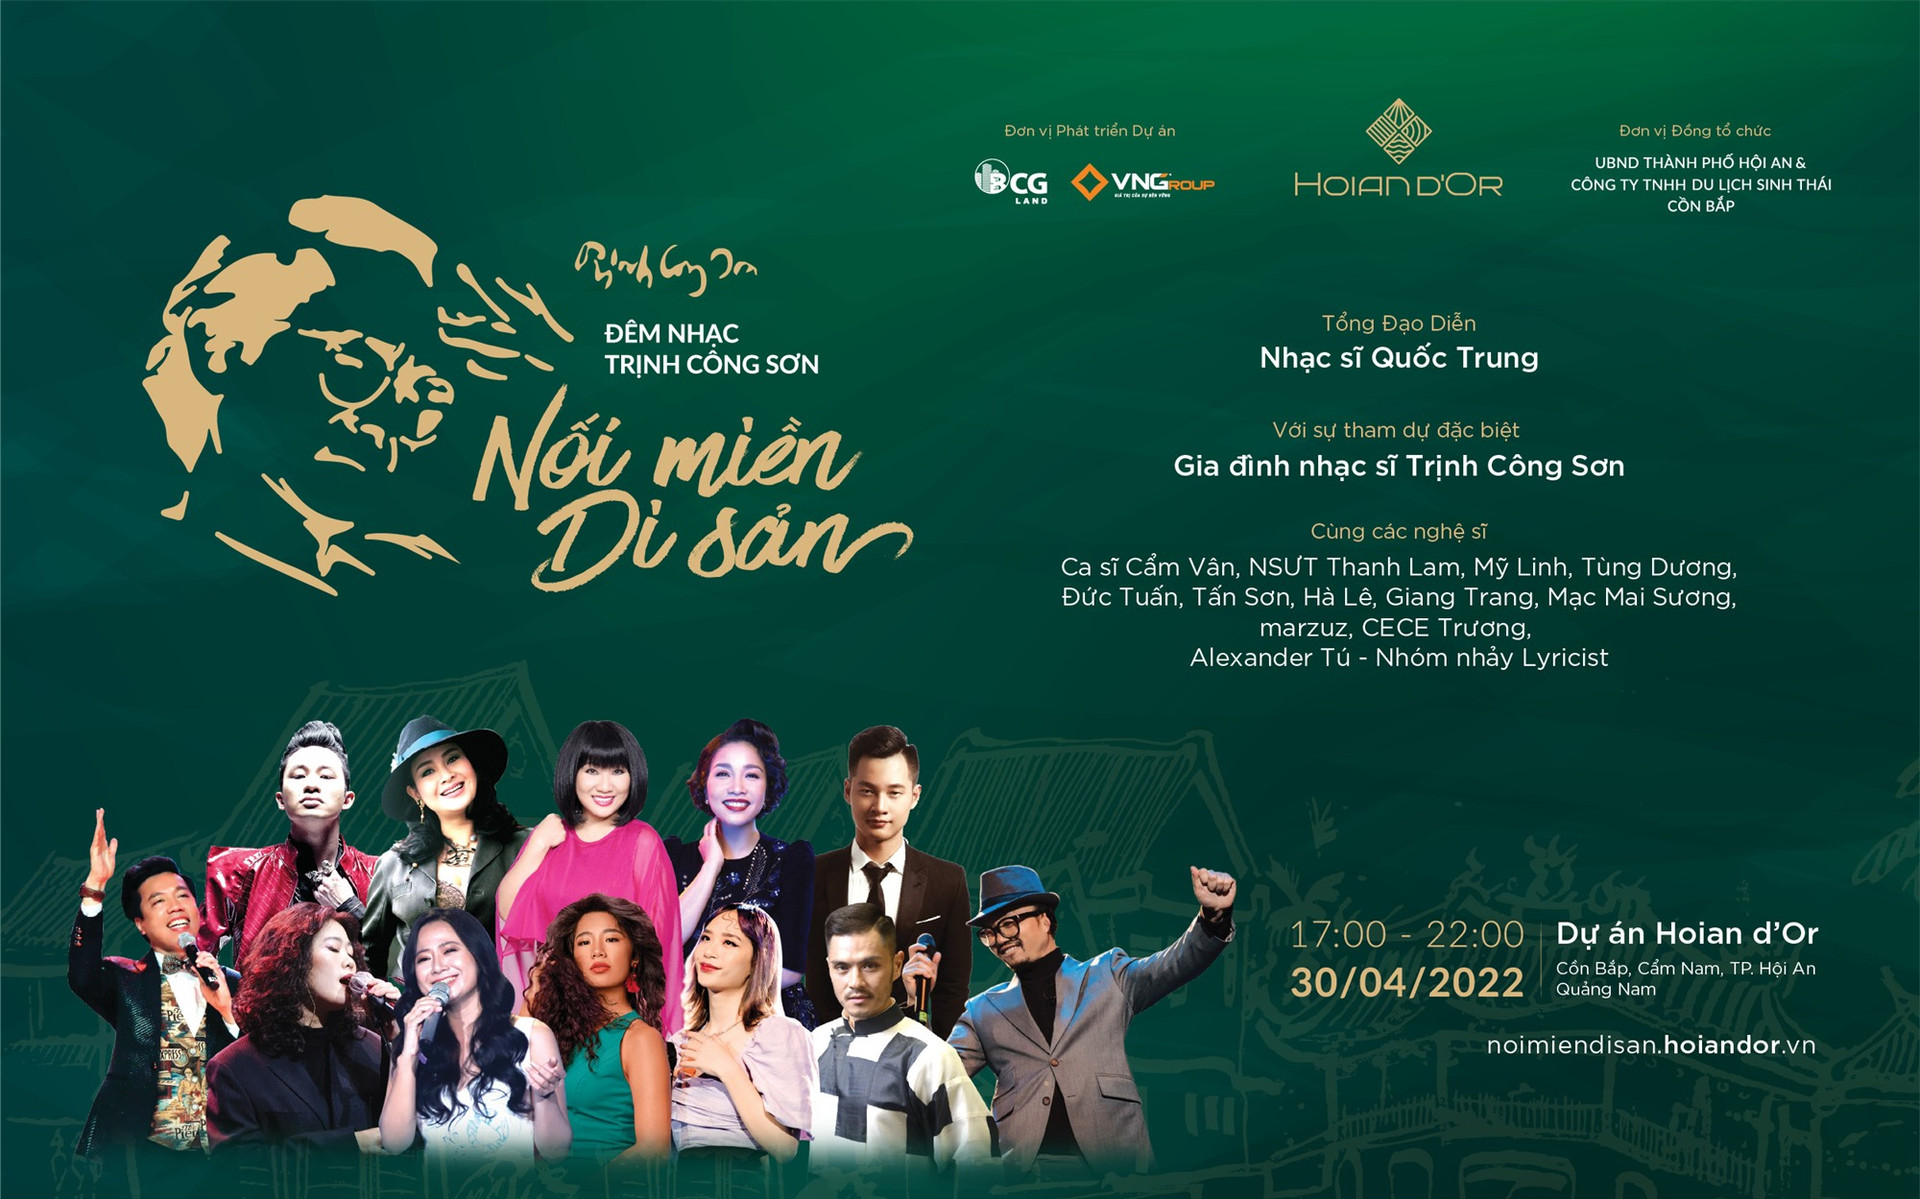 Đêm nhạc Trịnh Công Sơn sẽ diễn ra tối 30.4 tại Khu du lịch Cồn Bắp Hội An